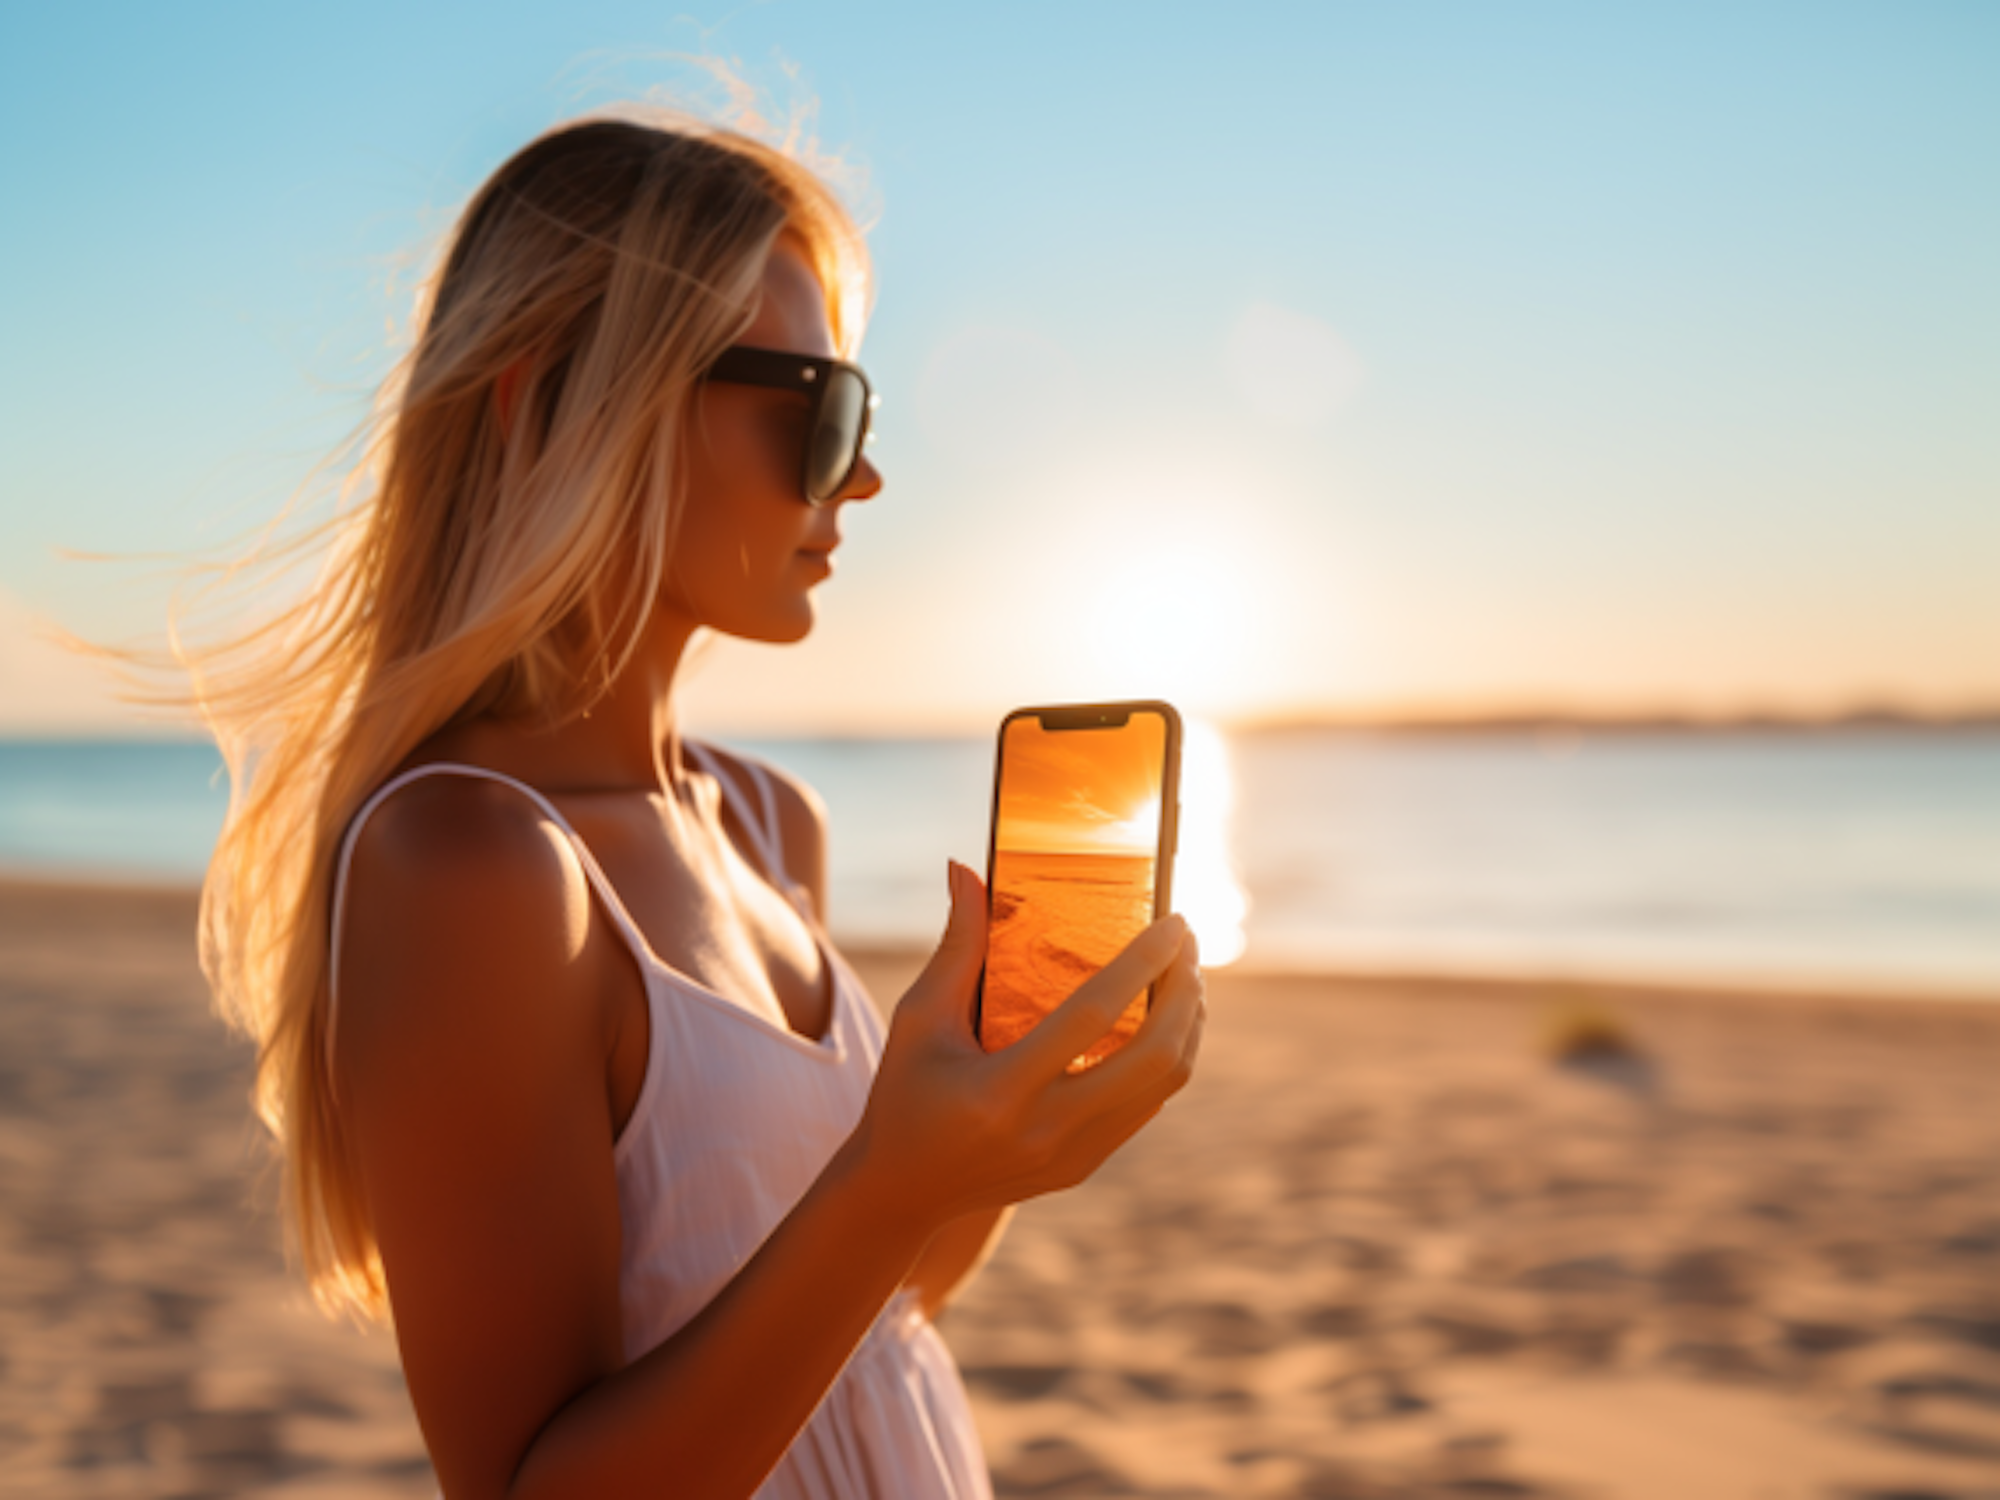 Eine Frau hält an einem heißen Strand ein iPhone in der Hand.